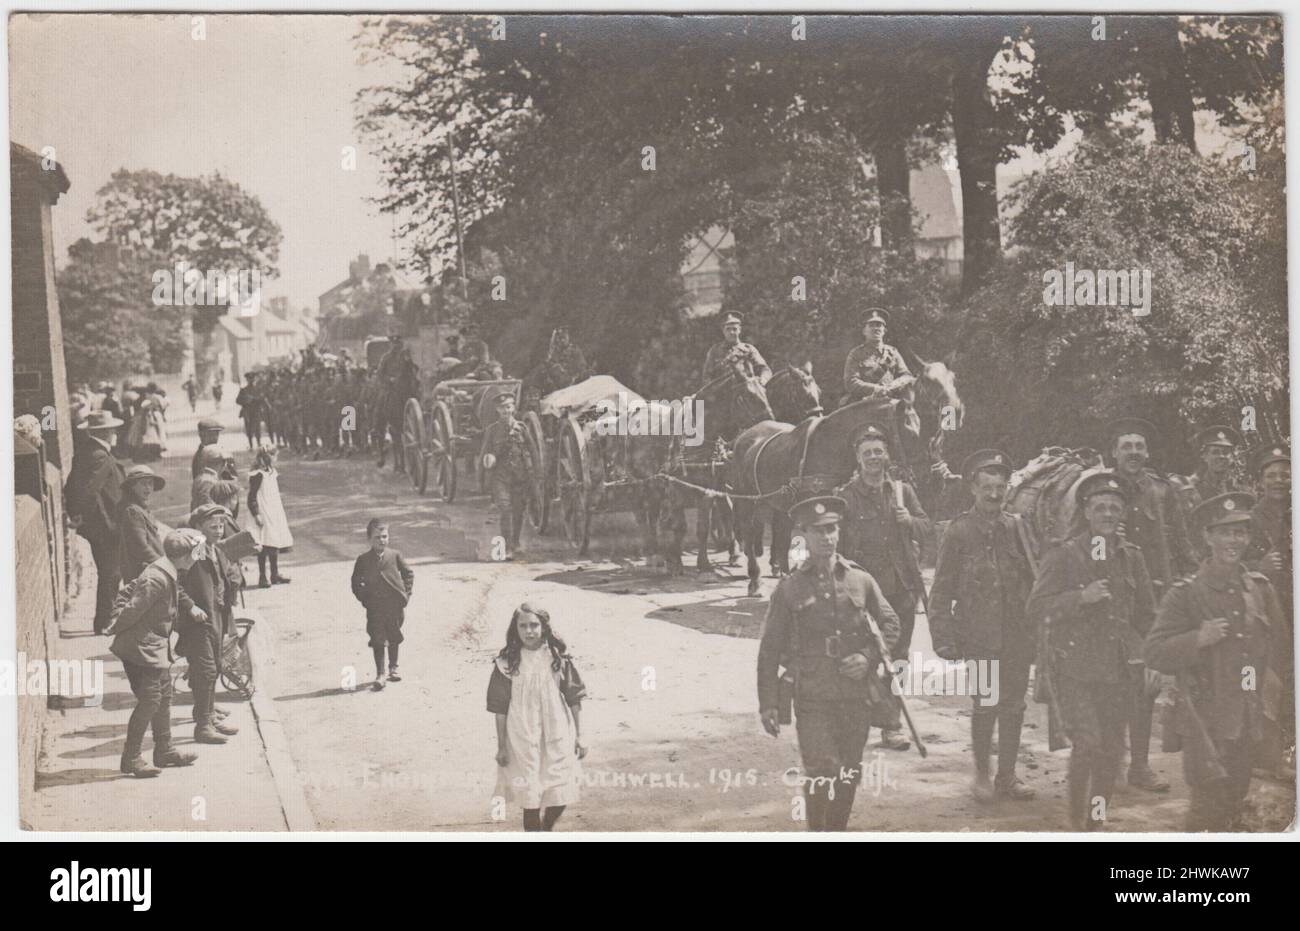 Royal Engineers a Southwell, Nottinghamshire, 1915: Fotografia di una colonna di soldati che marciavano attraverso la strada della città in piena uniforme con fucili, diversi carri trainati da cavalli con conducenti sono anche inclusi. Gli uomini, le donne e i bambini locali possono essere visti guardando l'evento & una ragazza & ragazzo che sembrano marching con i soldati Foto Stock